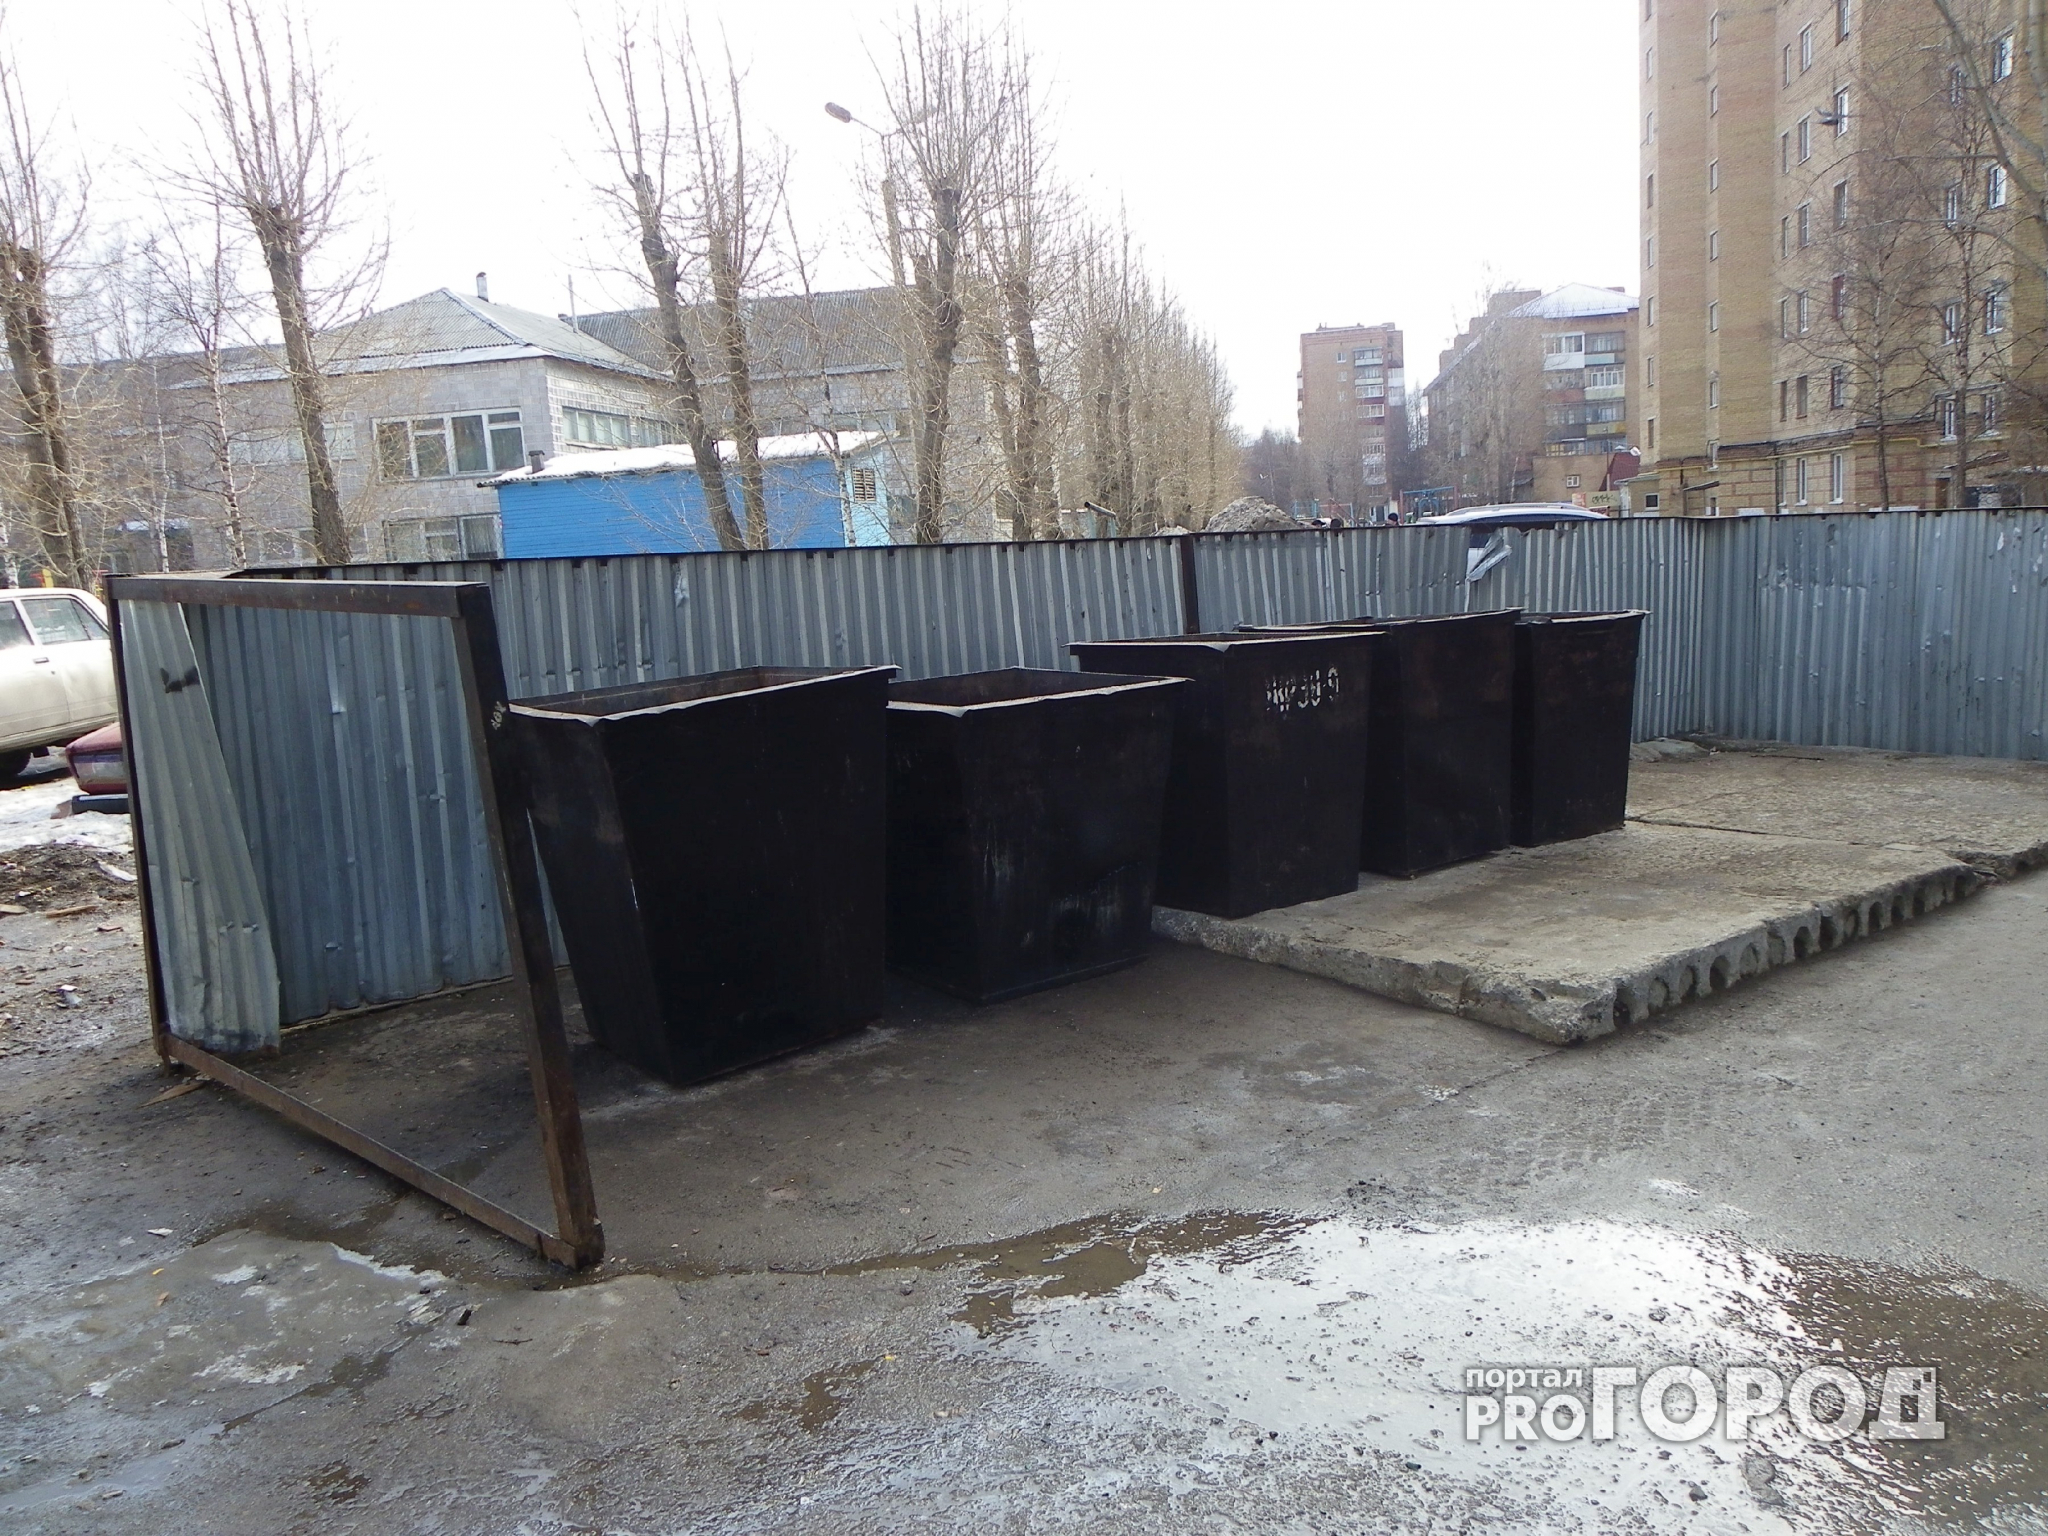 Появились подробности о трупе младенца, найденном в мусорке в Нижнем Новгороде (ФОТО)